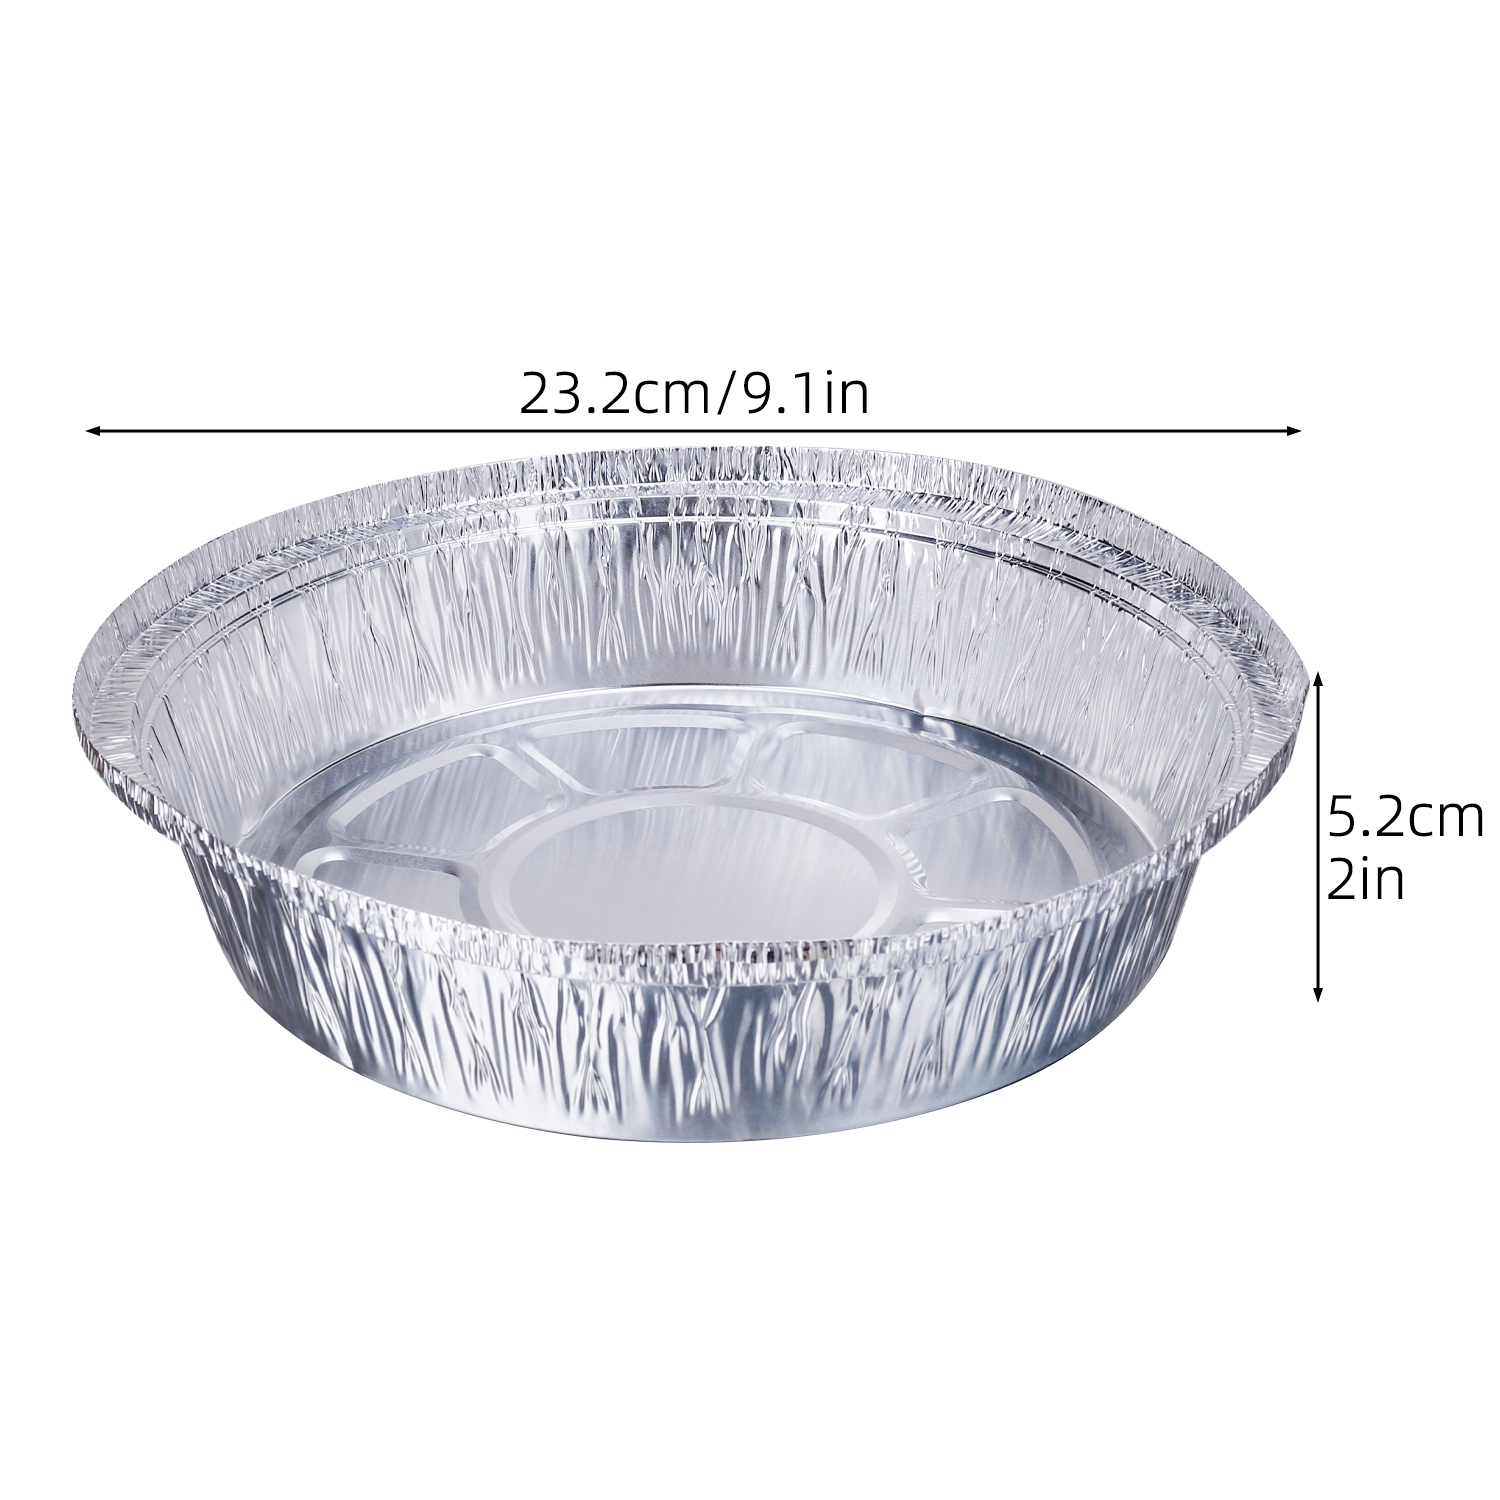 10Pcs 6/7/8/9 inch Round Tin Foil Pie Dish Tin Cake Tray Baking